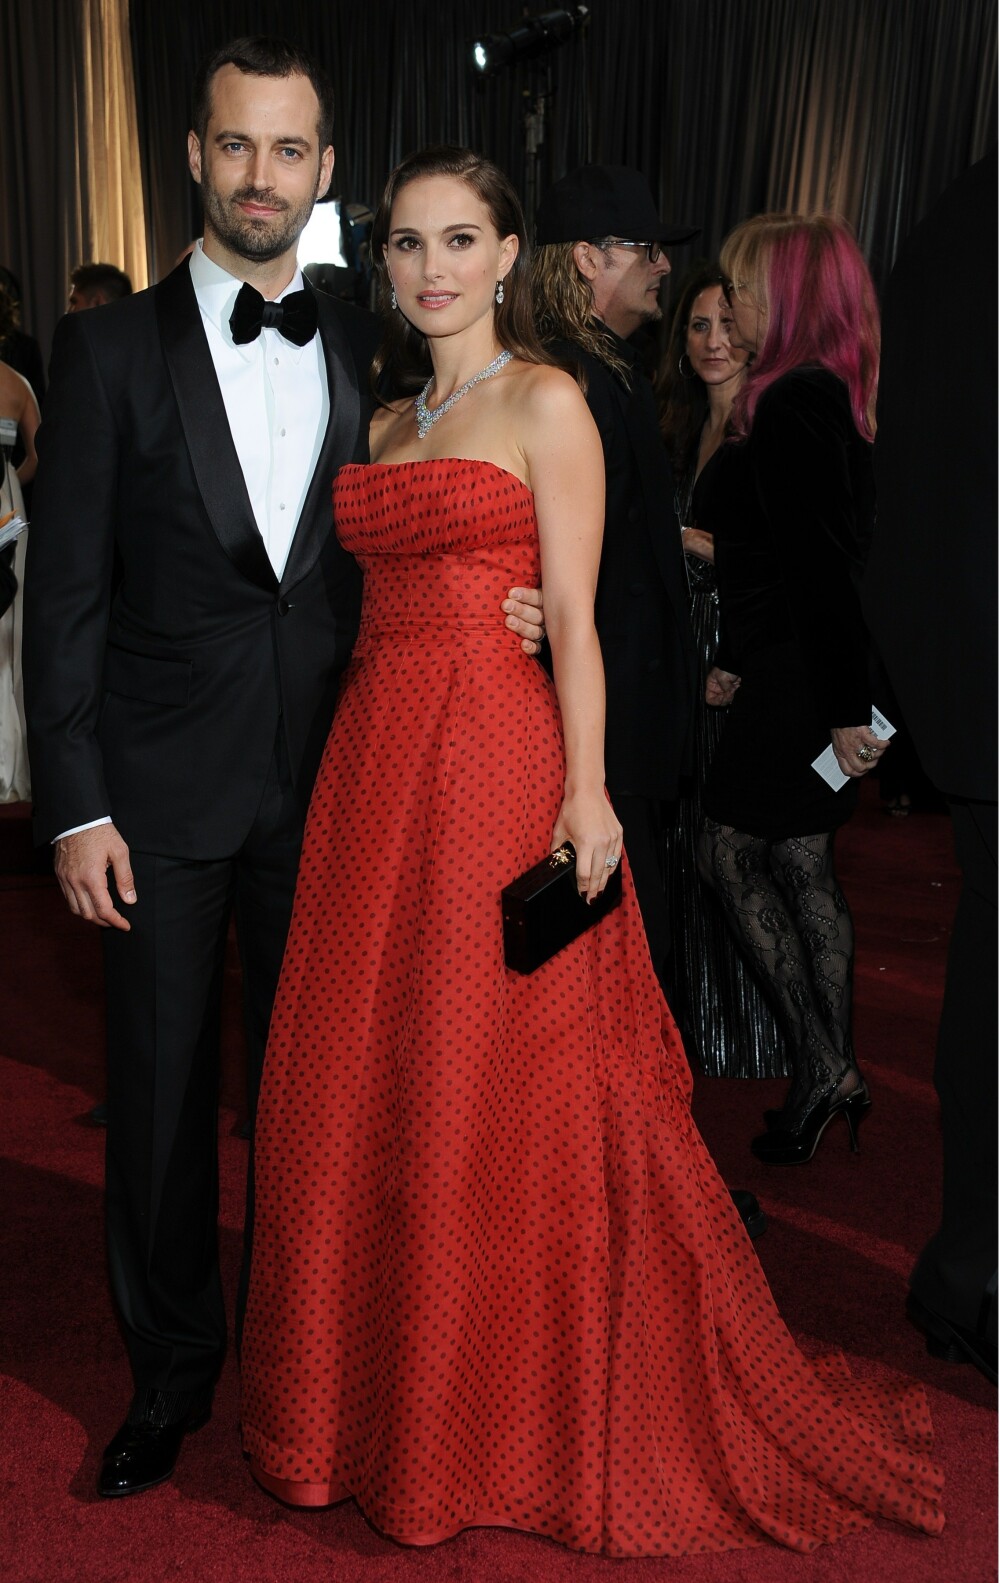 Defilarea starurilor pe covorul rosu, la Oscar 2012. Ce rochii au purtat vedetele. FOTO - Imaginea 8